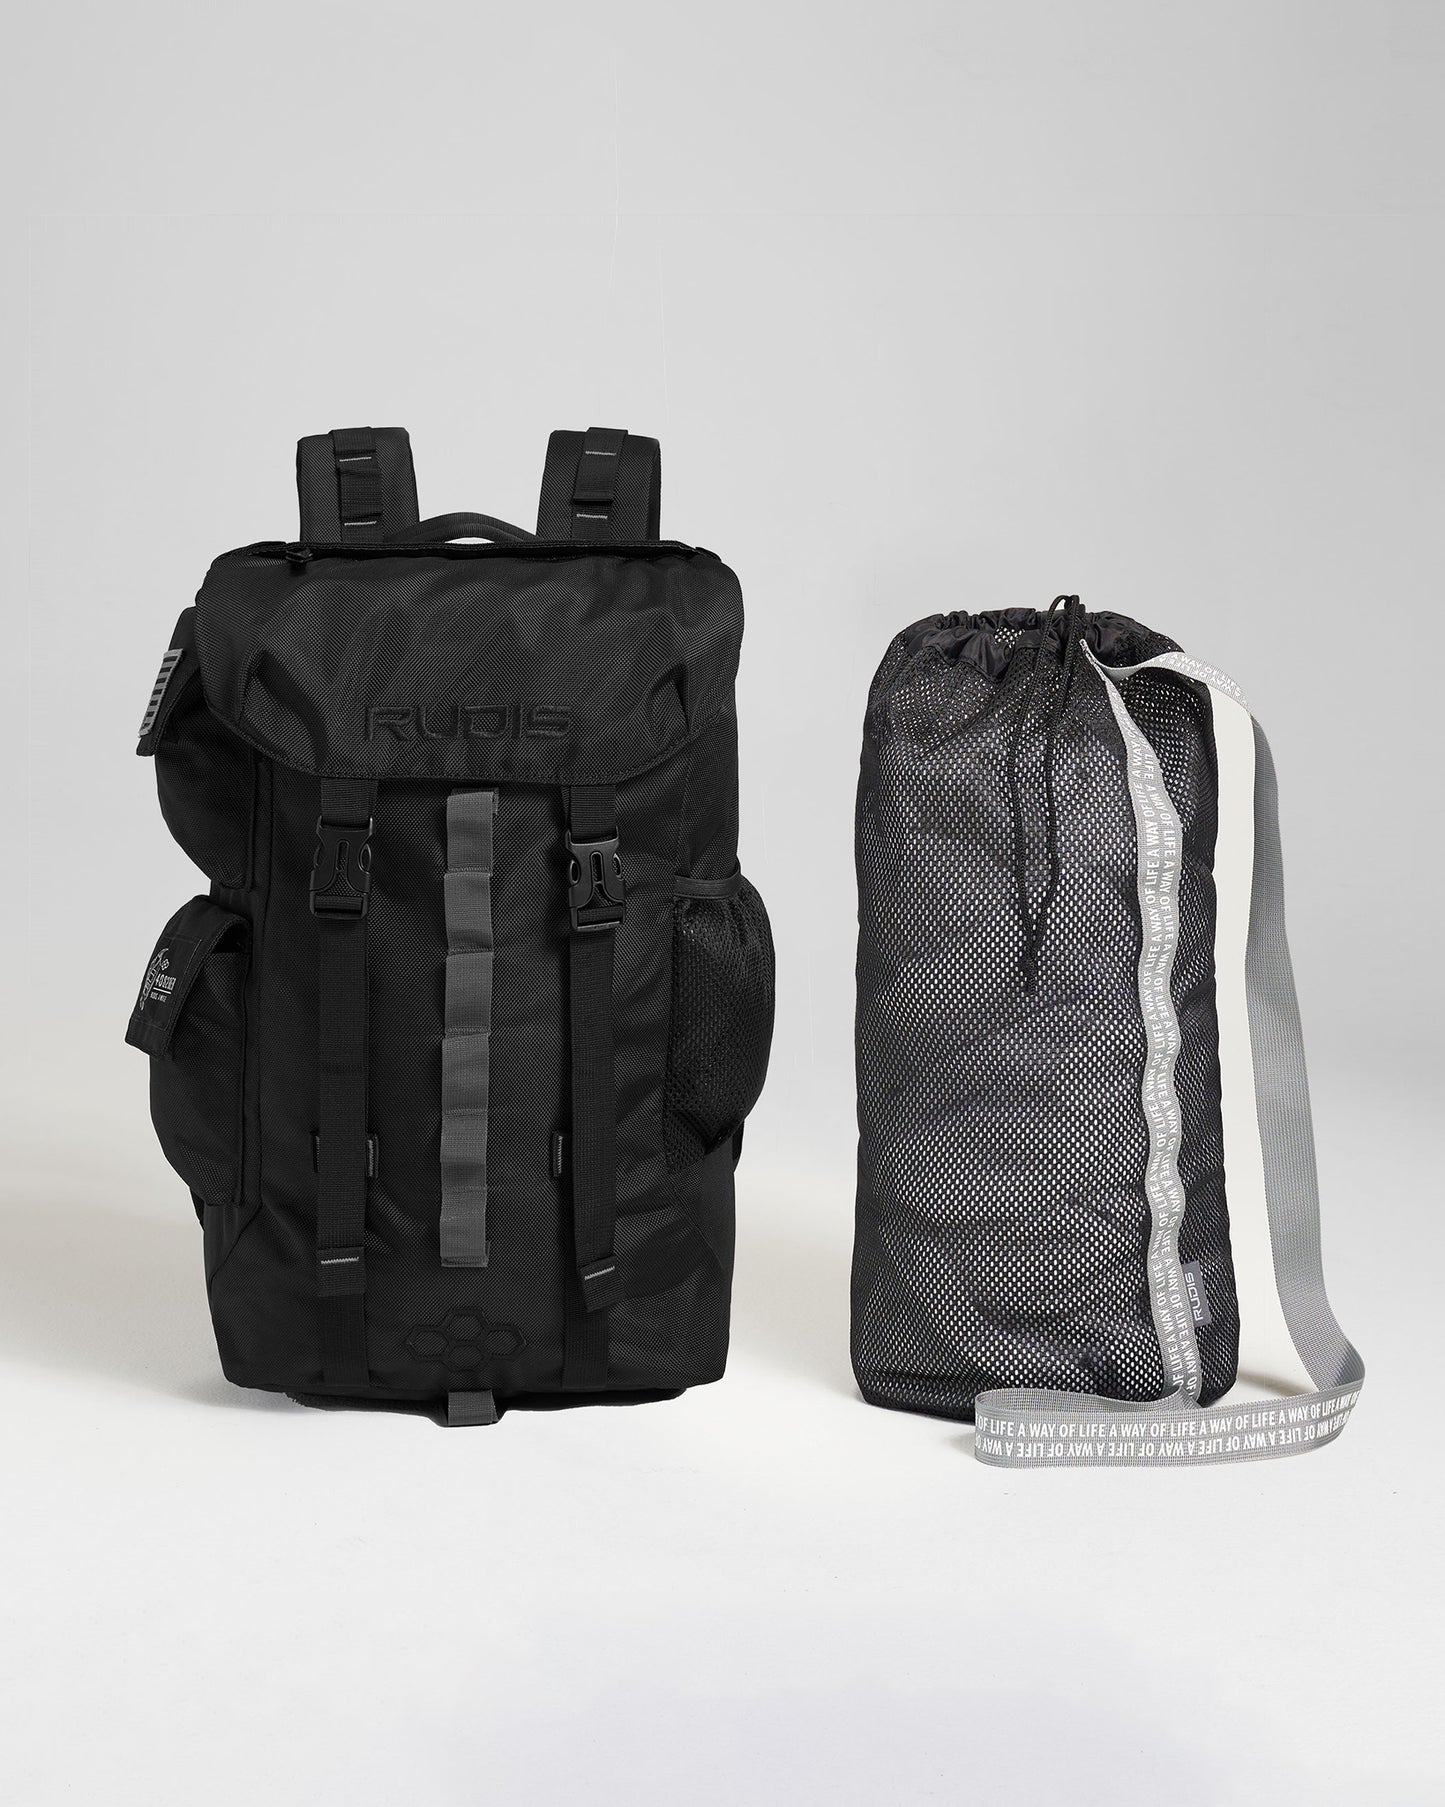 RUDIS 4082 Hiker Gearpack - Black